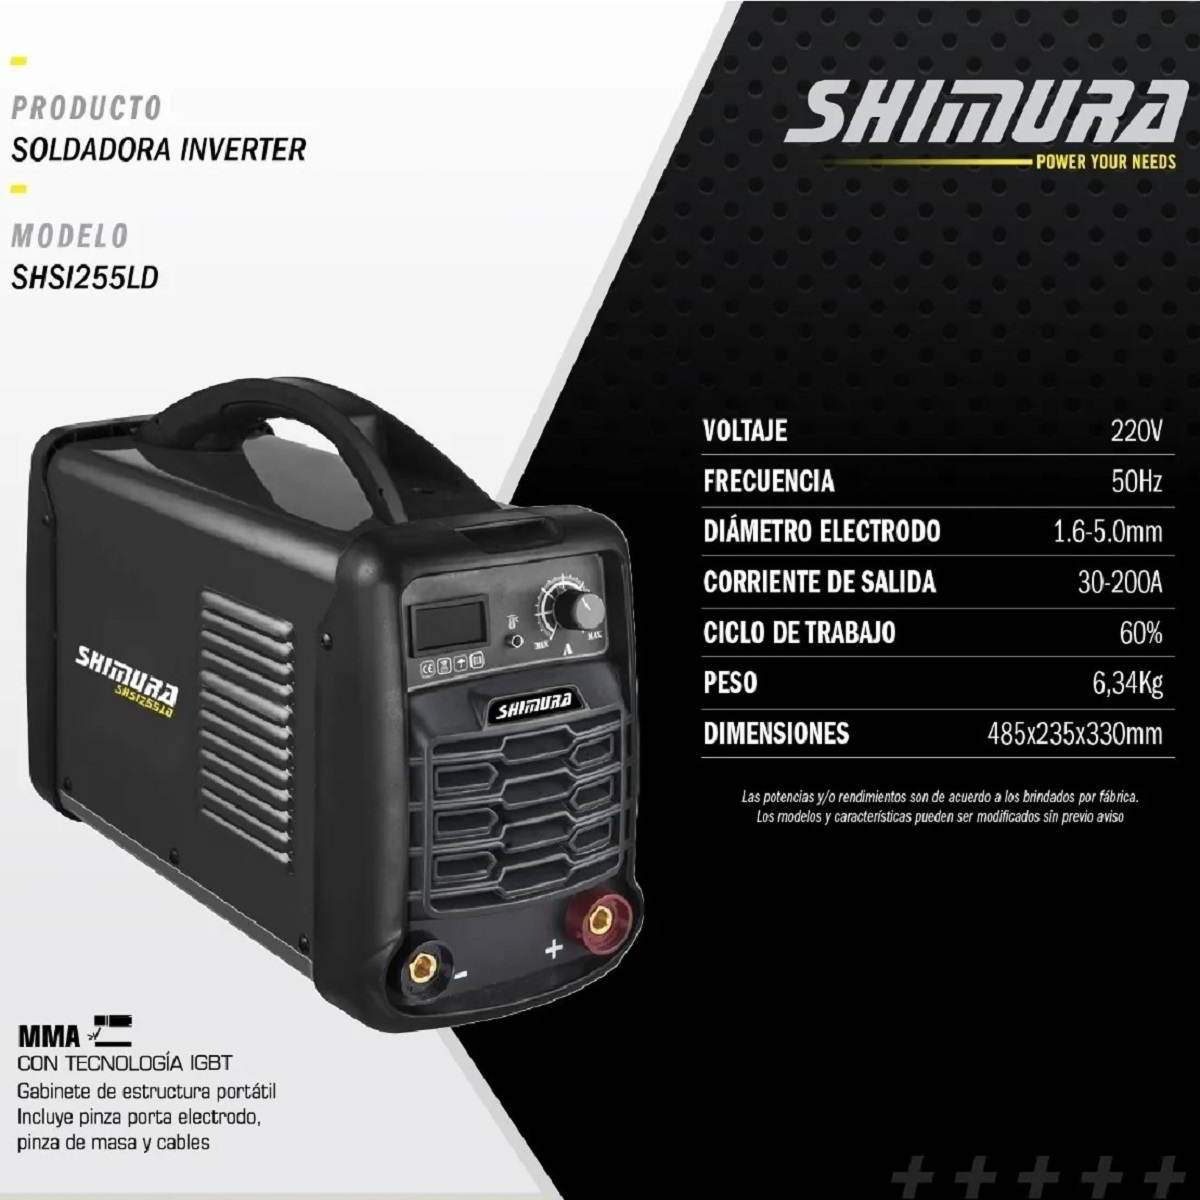 SHSI255LD máquina de soldar inverter